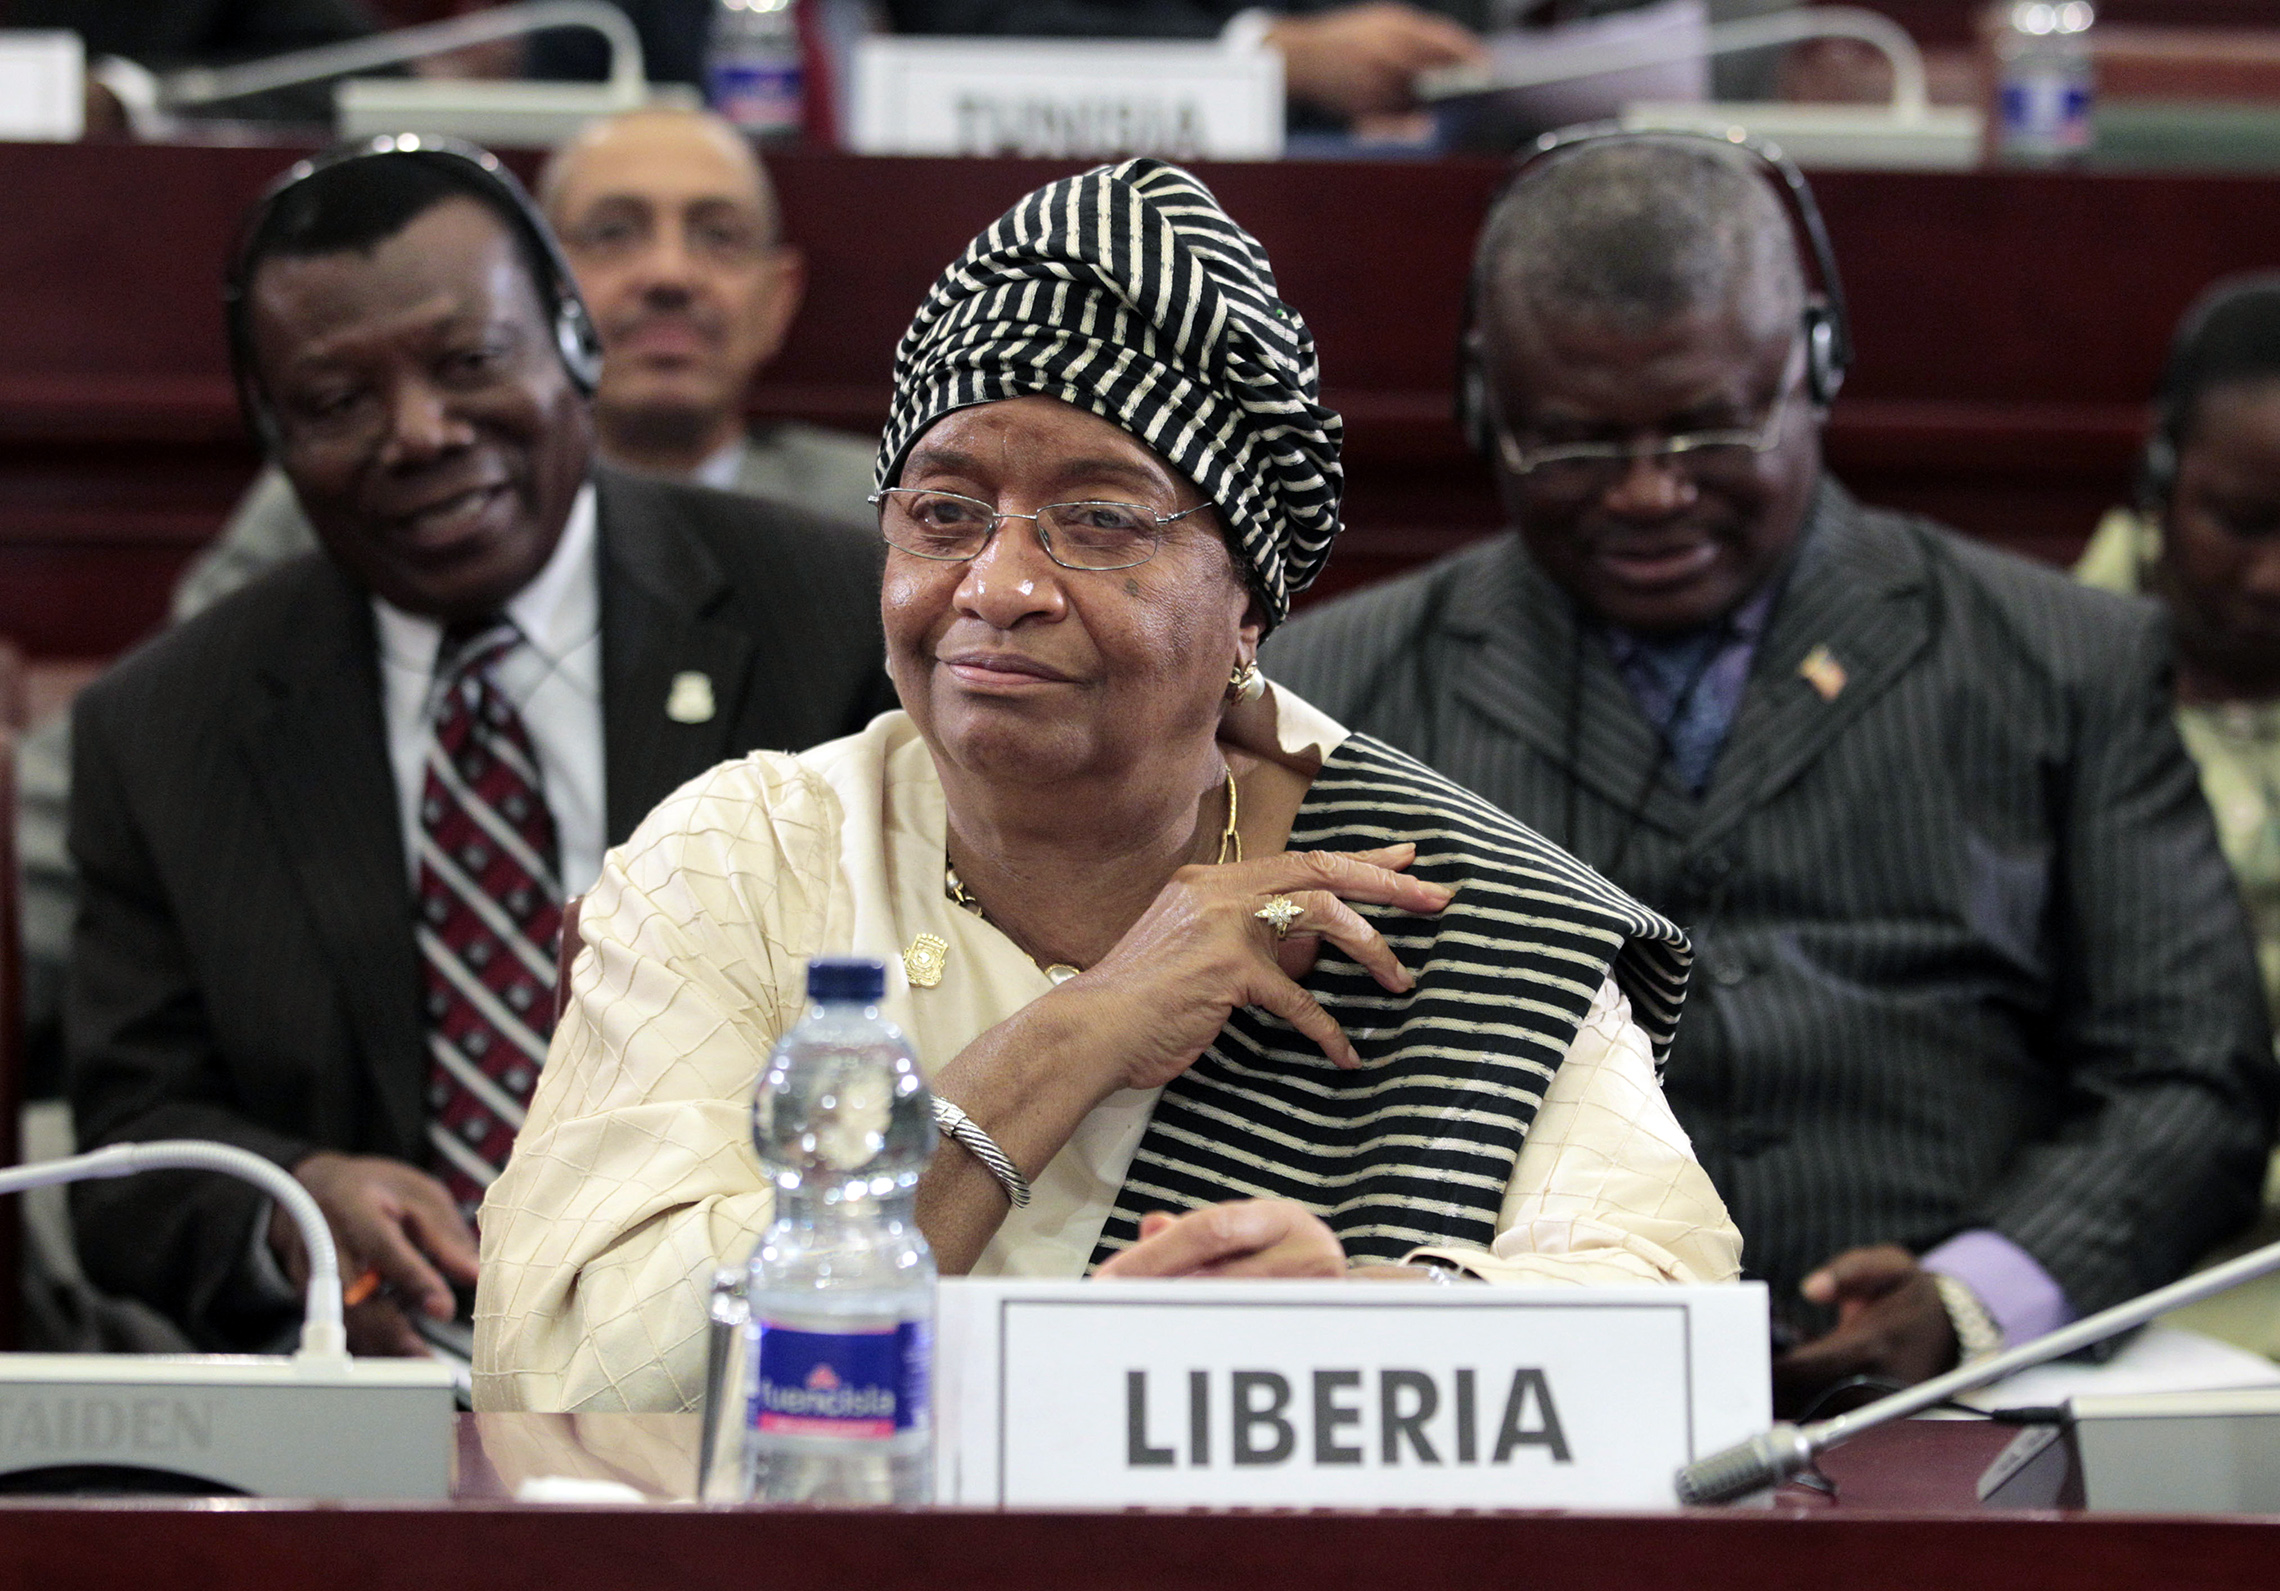 Die liberianische Präsidentin Ellen Johnson Sirleaf, gesehen während der Abschlusssitzung des 17. Gipfels der Afrikanischen Union in Malabo, Äquatorialguinea, 2011. Die Sitzung des Tages wurde von der Debatte über die Unruhen in Libyen dominiert, wo sich Muammar Gaddafi angesichts eines Volksaufstands gegen seine 42-jährige Herrschaft prekär an die Macht klammerte. (AP Images /Rebecca Blackwell)'s session was dominated by debate over the turmoil in Libya, where Moammar Gadhafi clung precariously to power in the face of a popular uprising against his 42-year rule. (AP Images/Rebecca Blackwell)